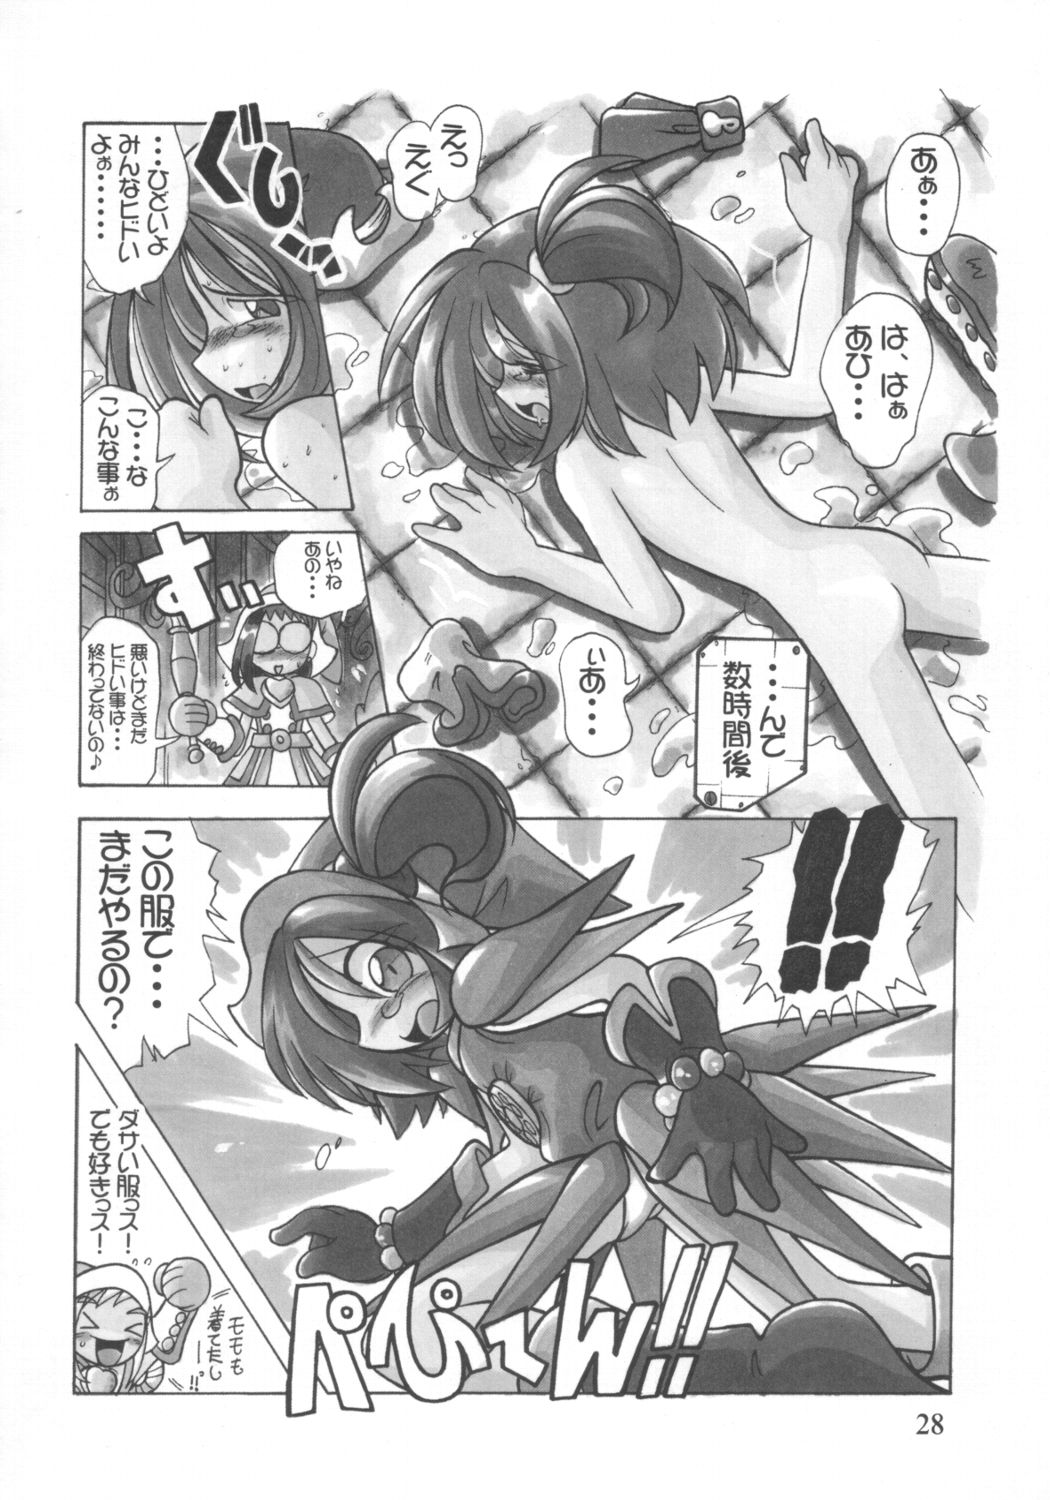 [RPG Company 2 (Various)] Lolita-Spirits Vol. 6 (Various) page 27 full